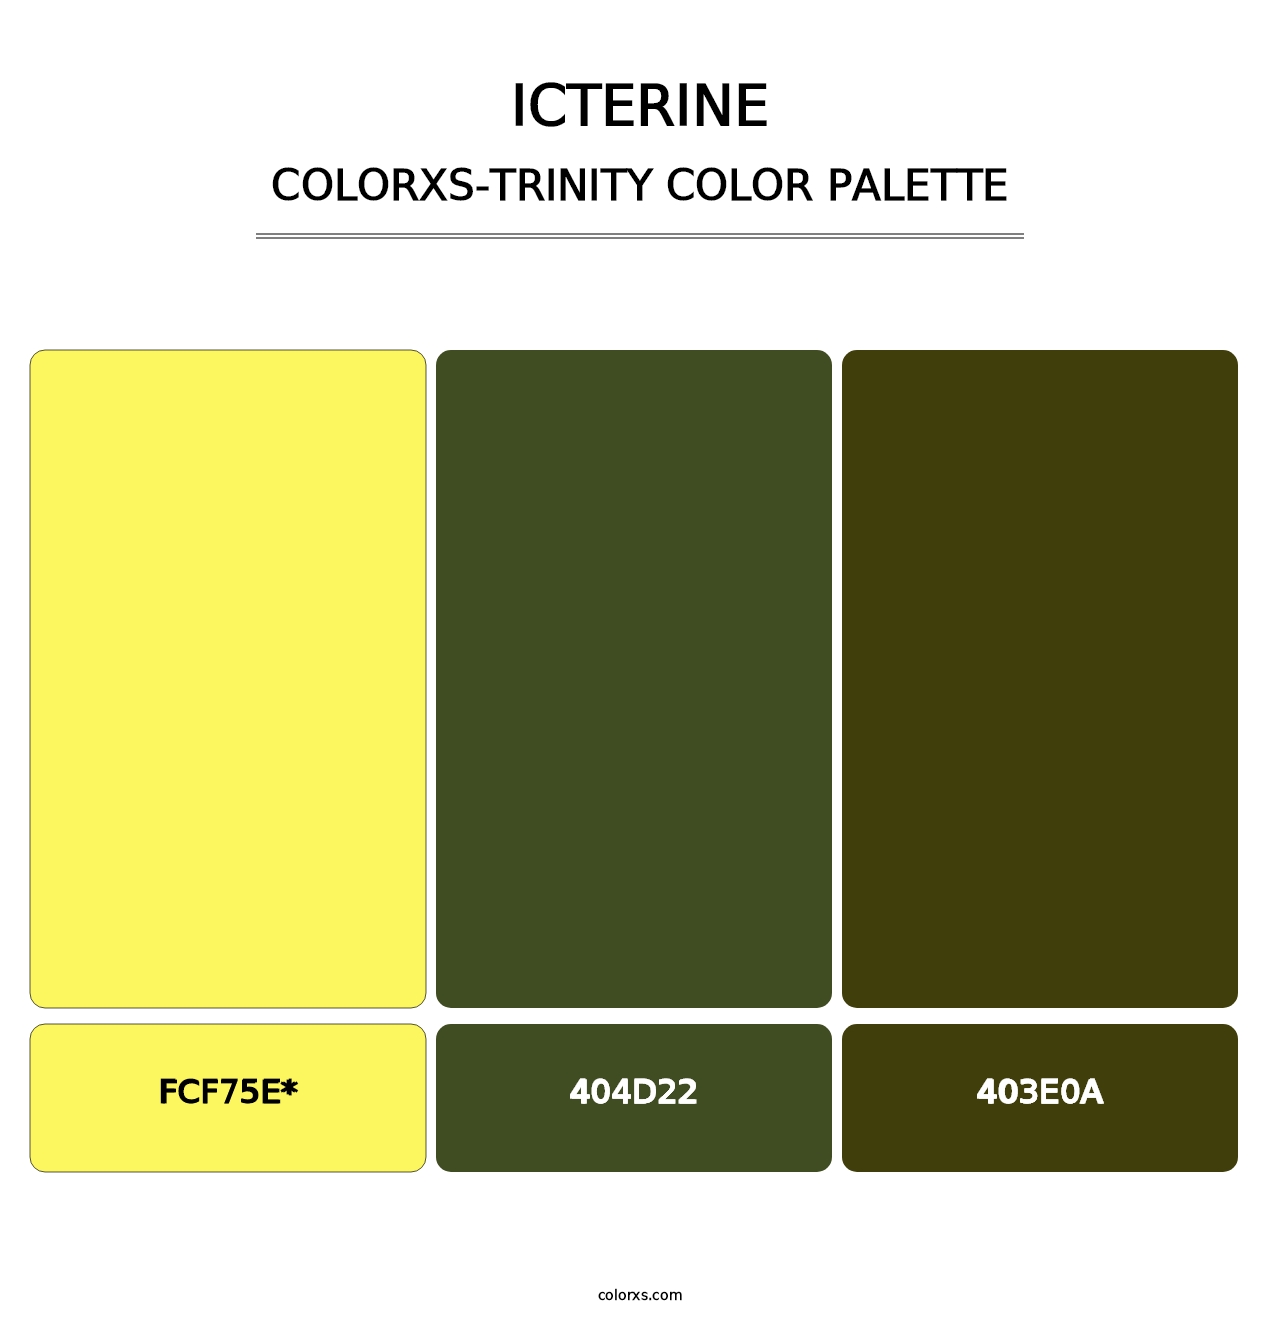 Icterine - Colorxs Trinity Palette